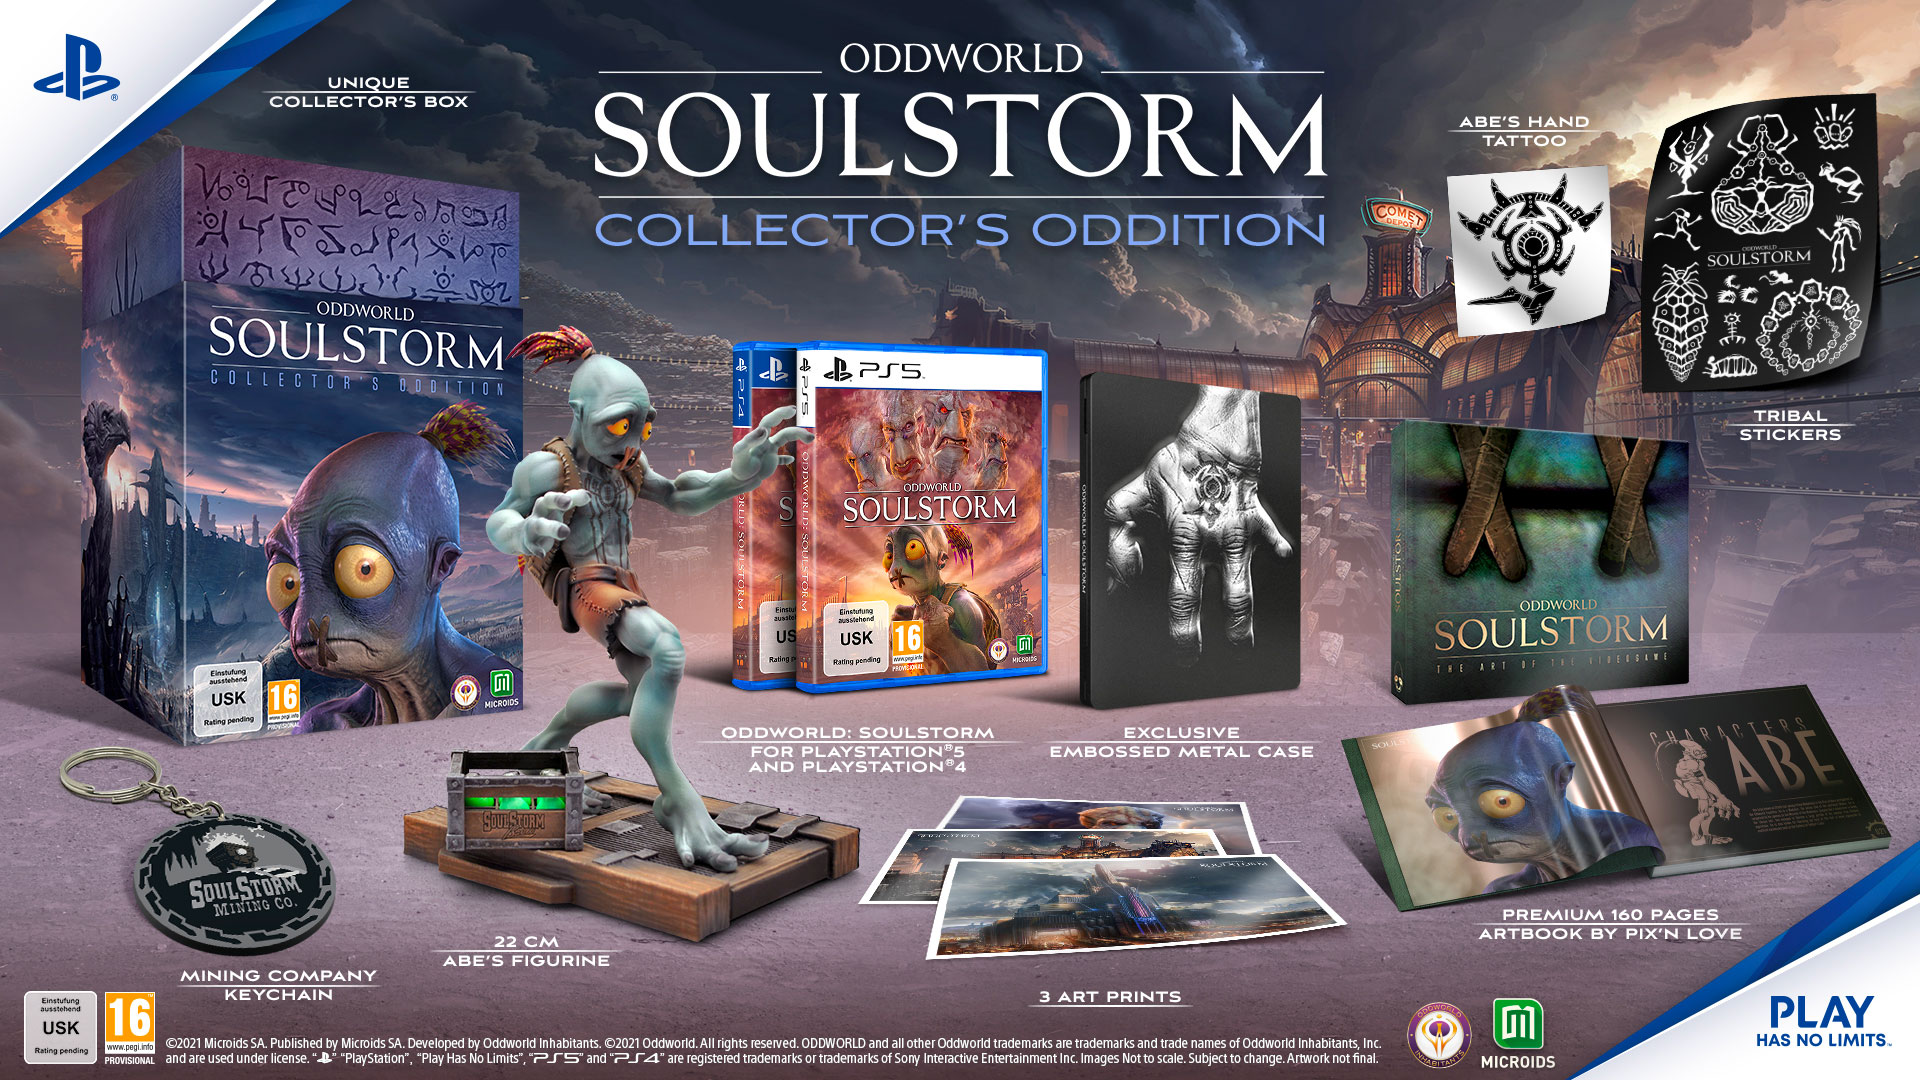 Oddworld Soulstorm Collectors Edition